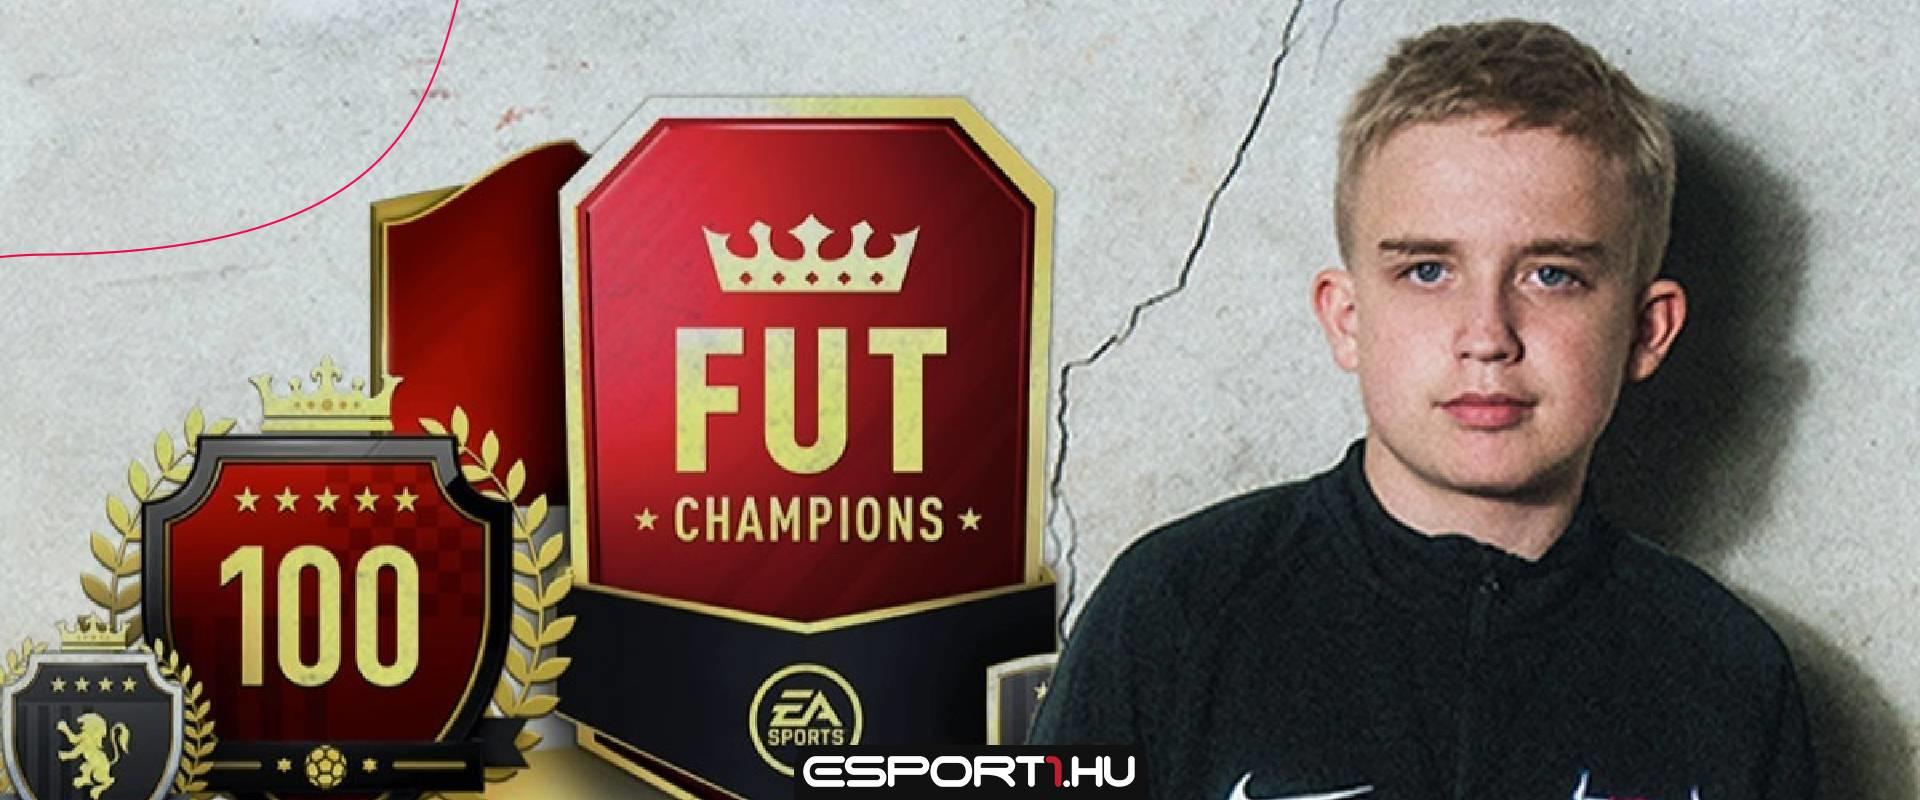 Kiderült mi a célja: ismerjük meg a 14 éves Anderst, a FIFA 21 új szupersztárját